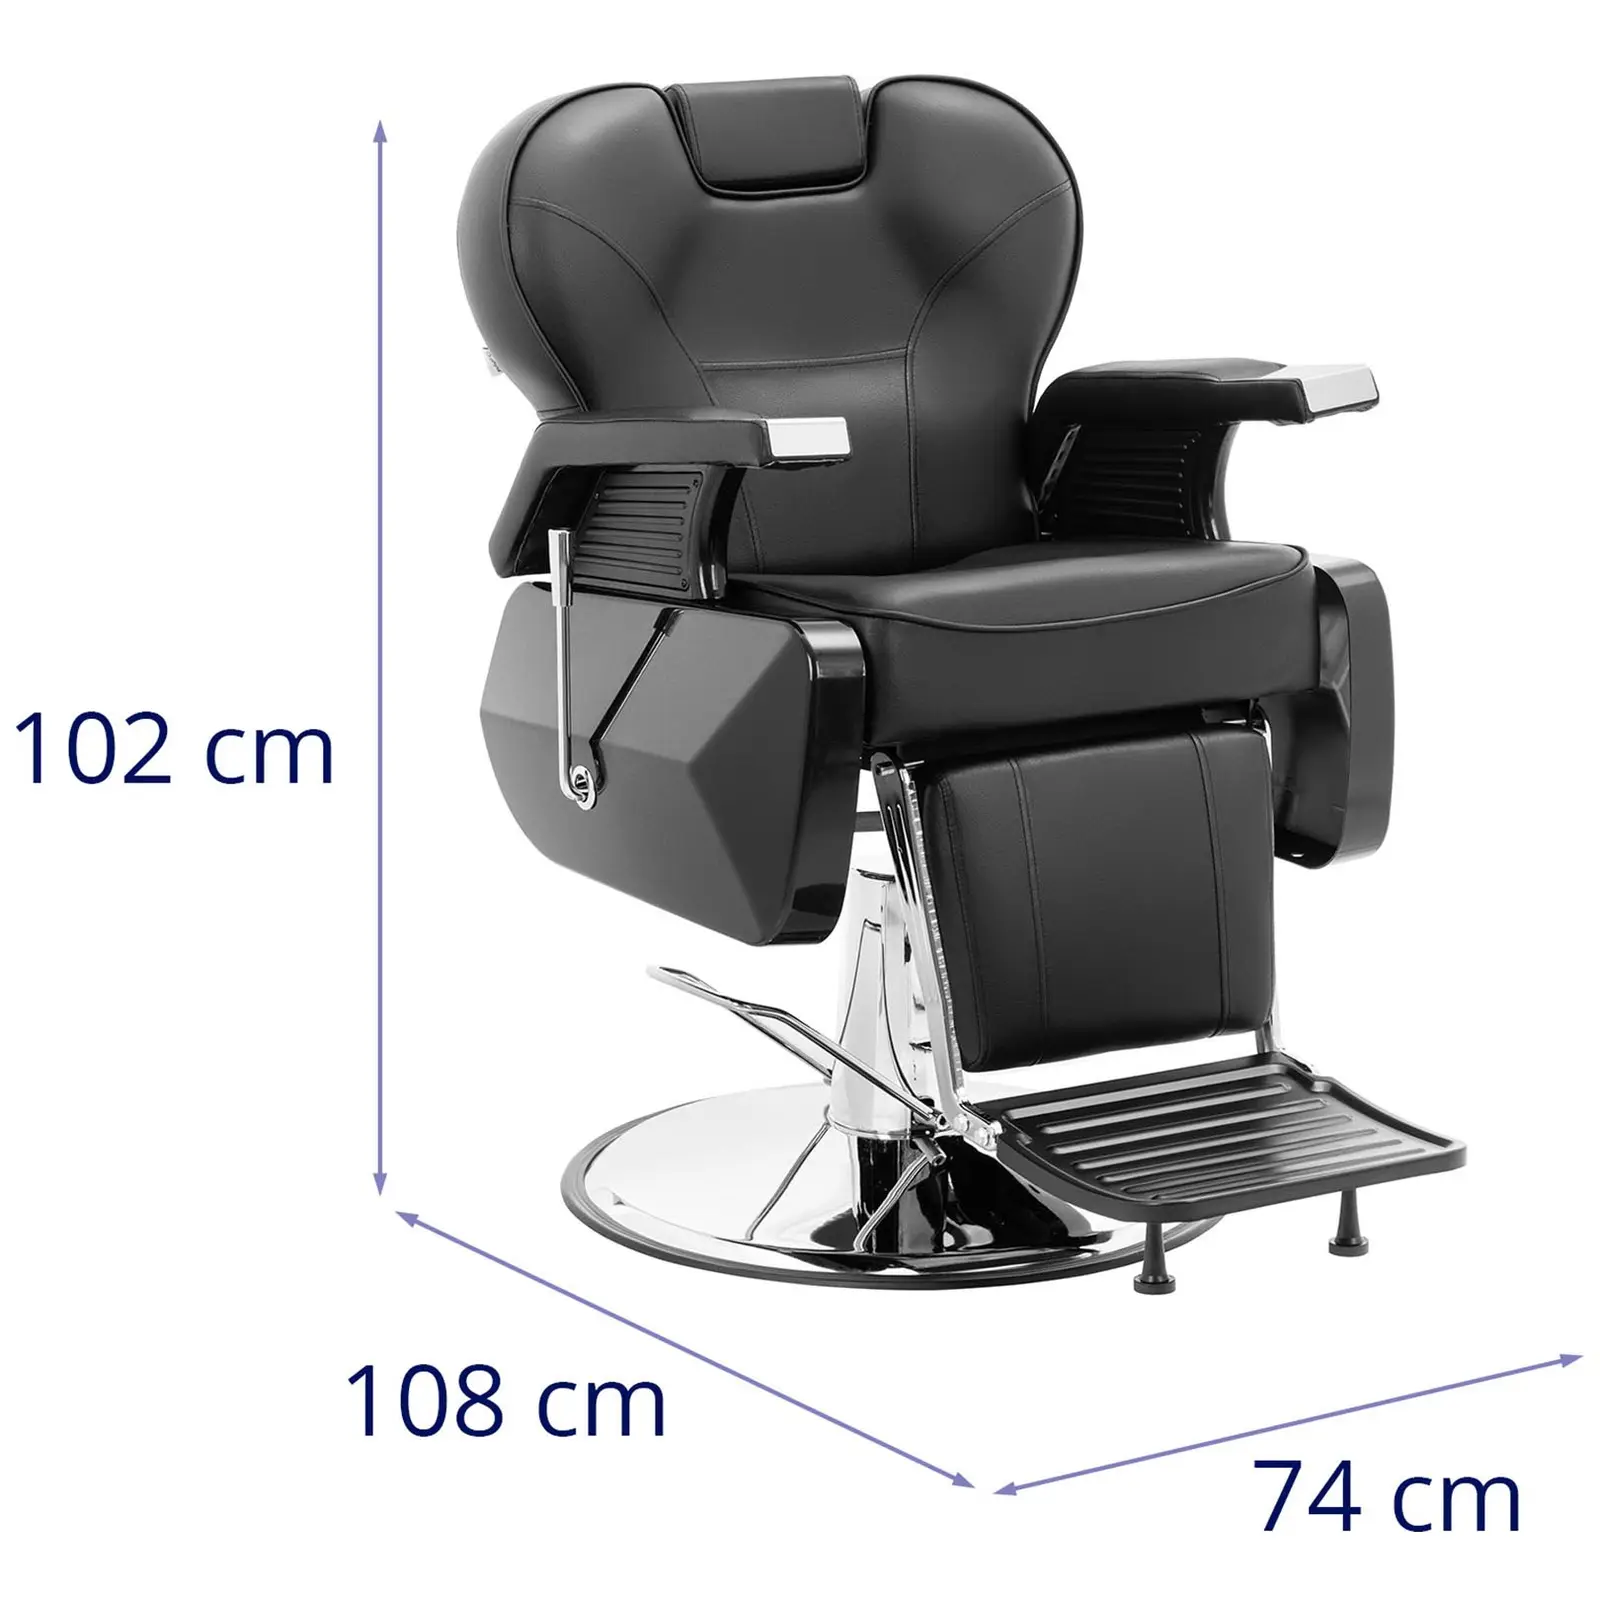 Fotel fryzjerski - podnóżek - 57 - 69 cm - 150 kg - czarny